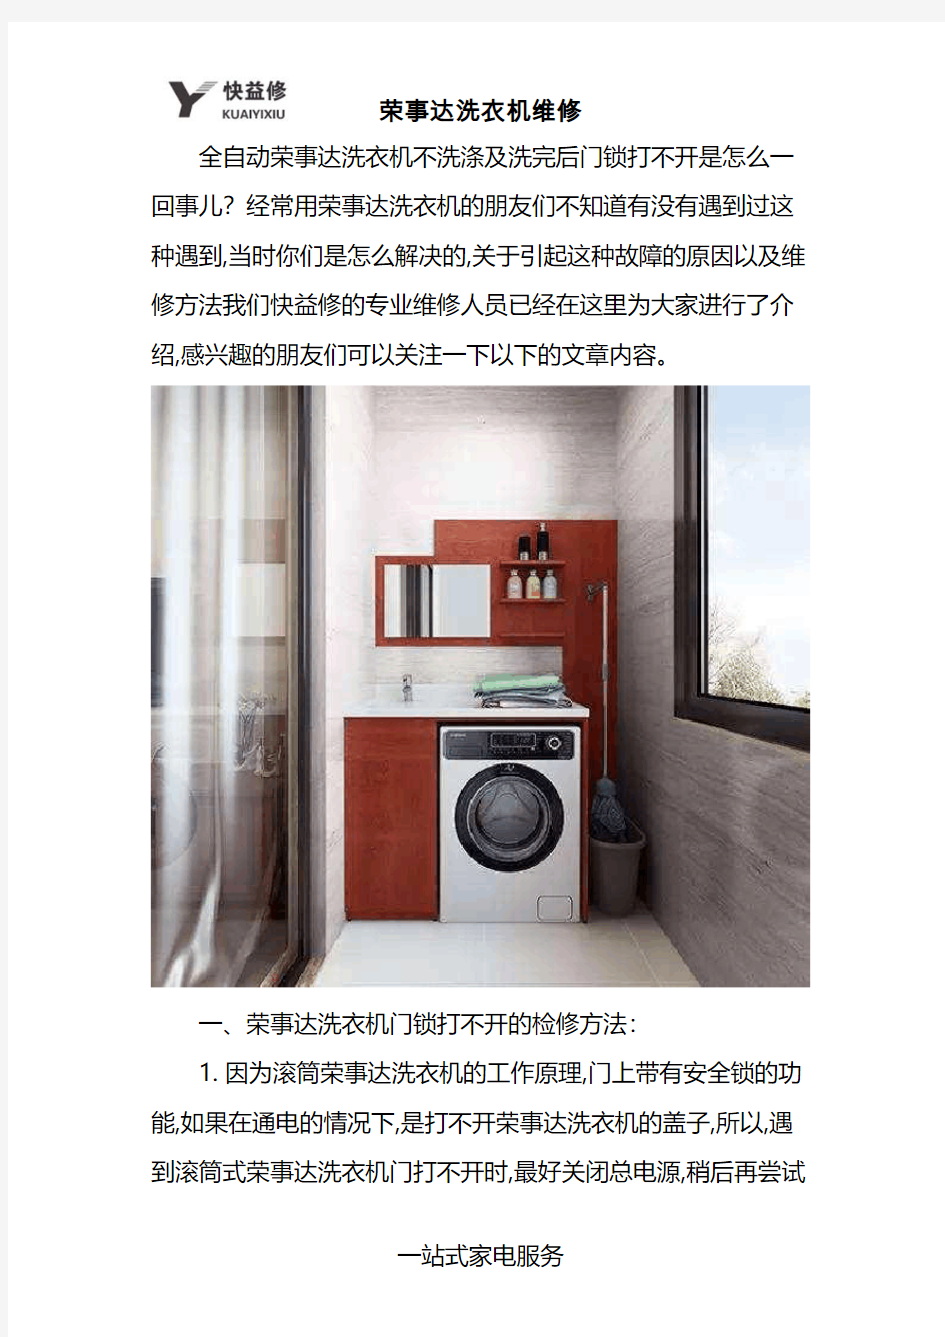 上海荣事达全自动洗衣机不洗涤及洗完后门锁打不开故障维修电话